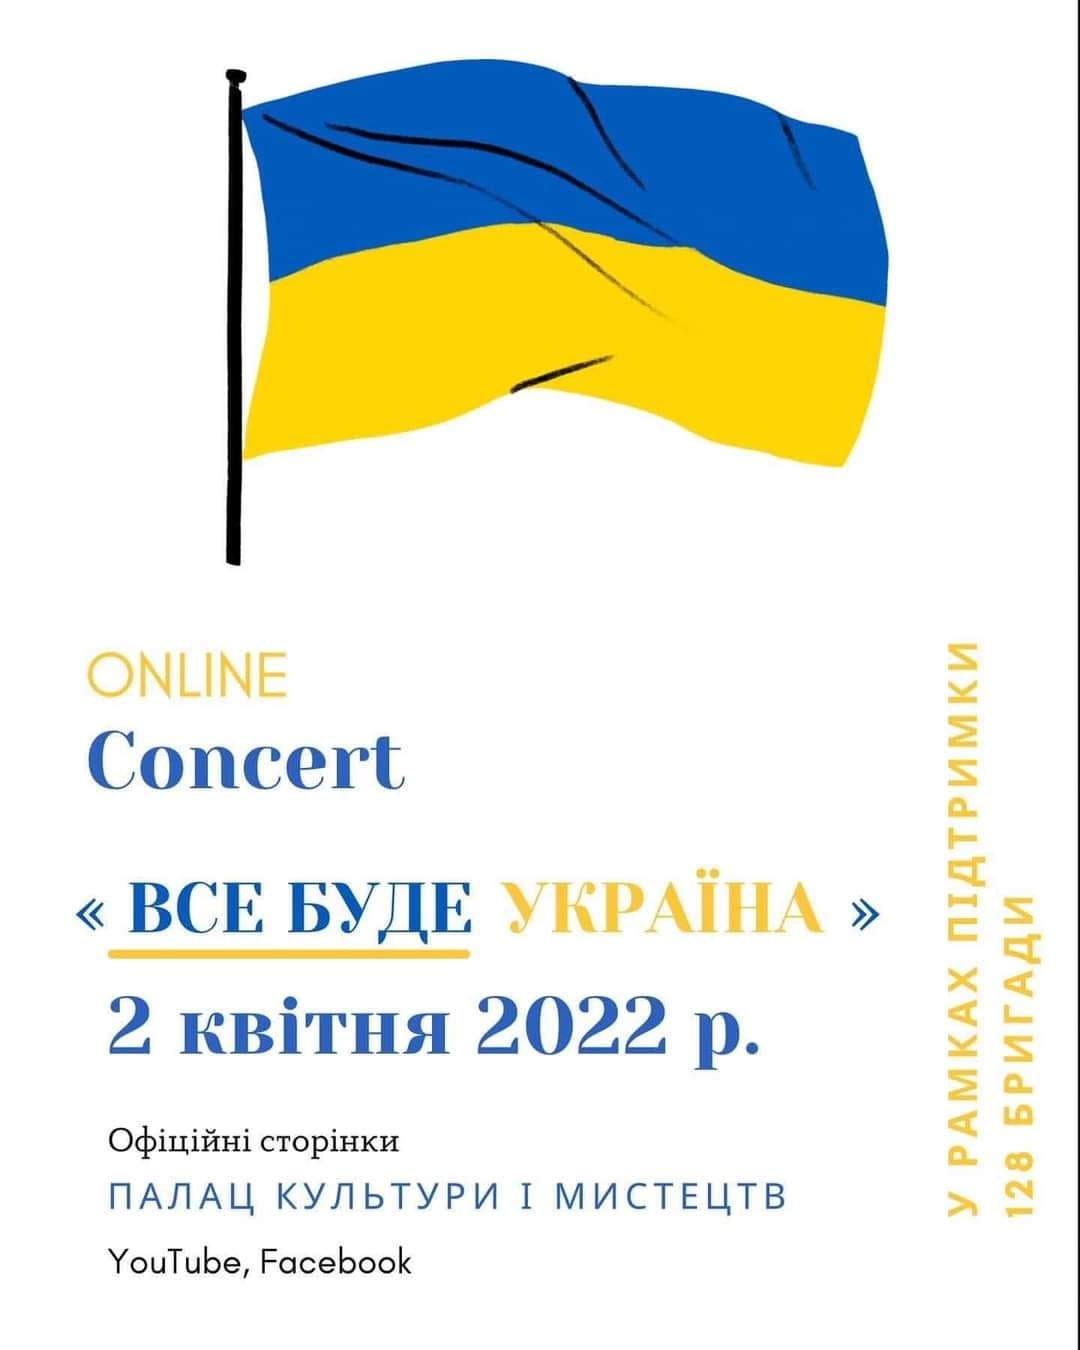 Палац культури і мистецтв проведе онлайн концерт «Все буде Україна» в підтримку 128 окремої гірсько-штурмової бригади.
